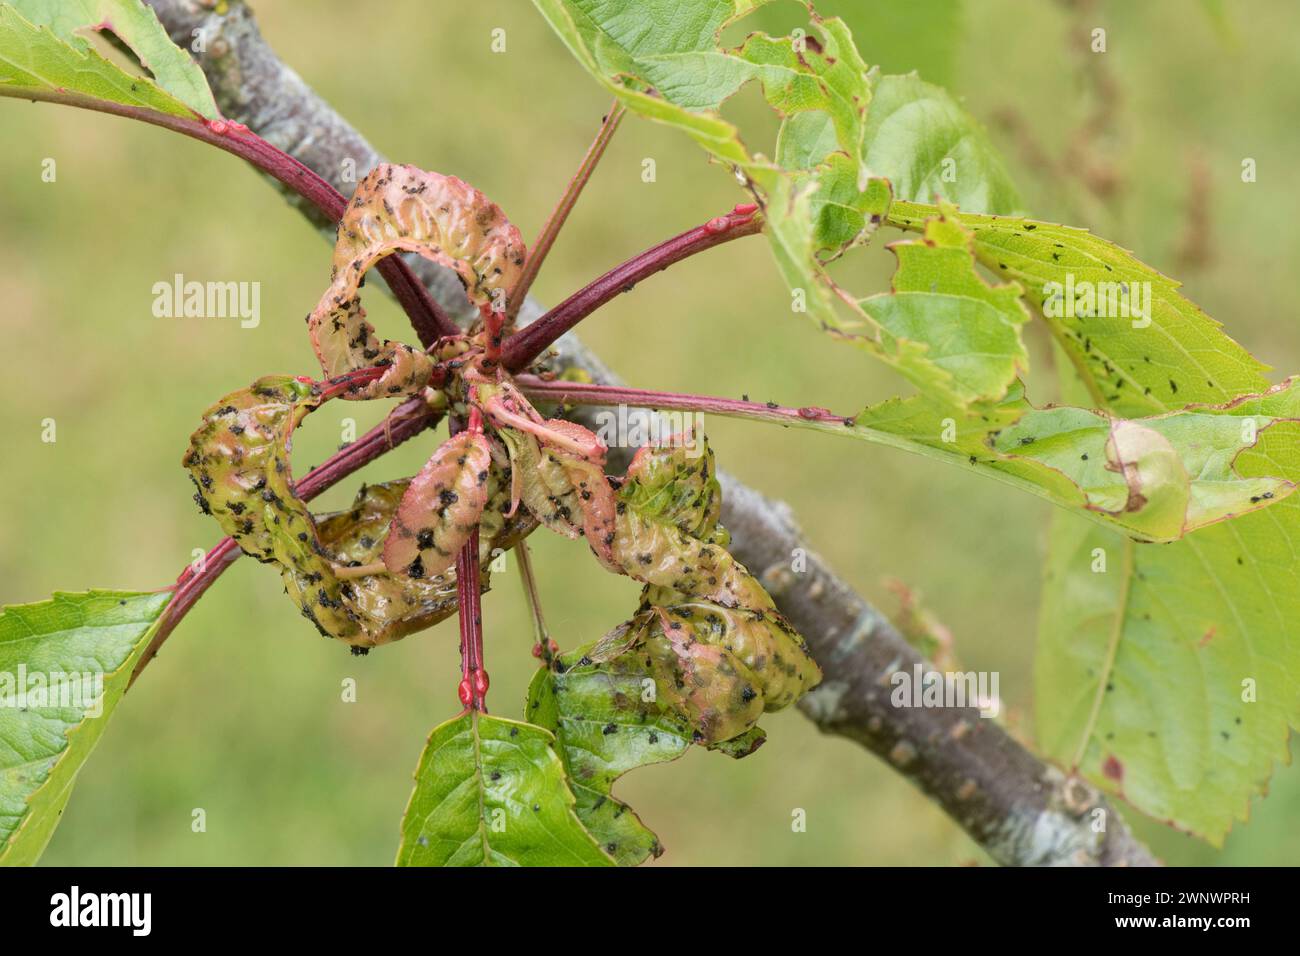 Colonie de pucerons noirs (Myzus cerasi) causant une distorsion aux jeunes feuilles d'un cerisier (Prunus avium), Berkshire, juin Banque D'Images